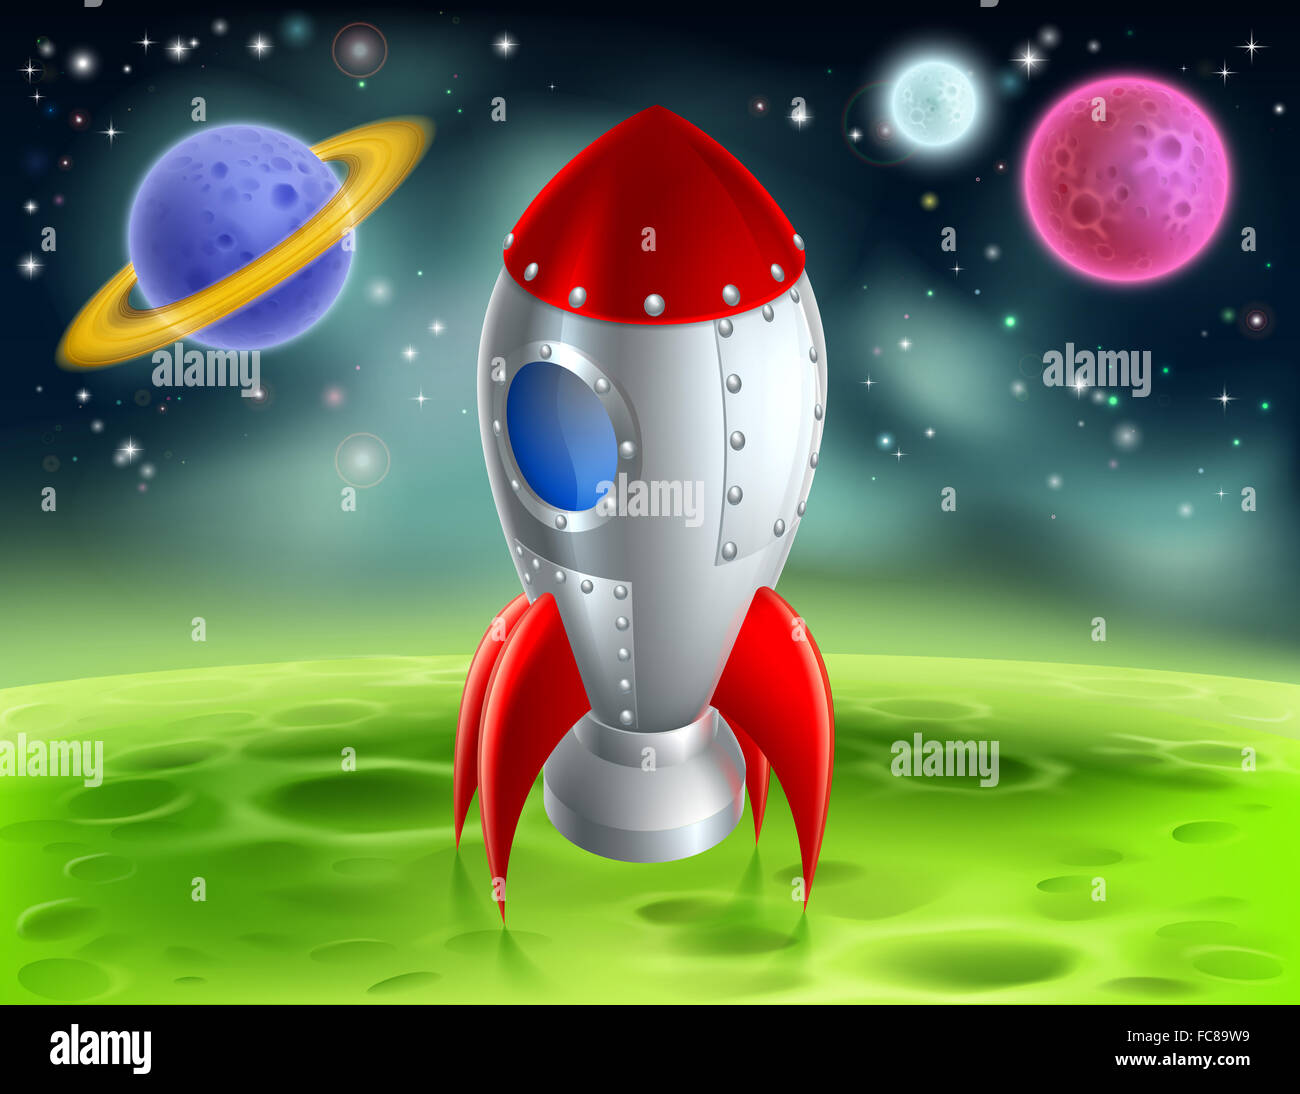 Eine Abbildung eines Cartoon retro Rocket Raumschiff oder Raumschiff landete auf einem Mond oder Planeten mit fremden Planeten und Sternen in th Stockfoto